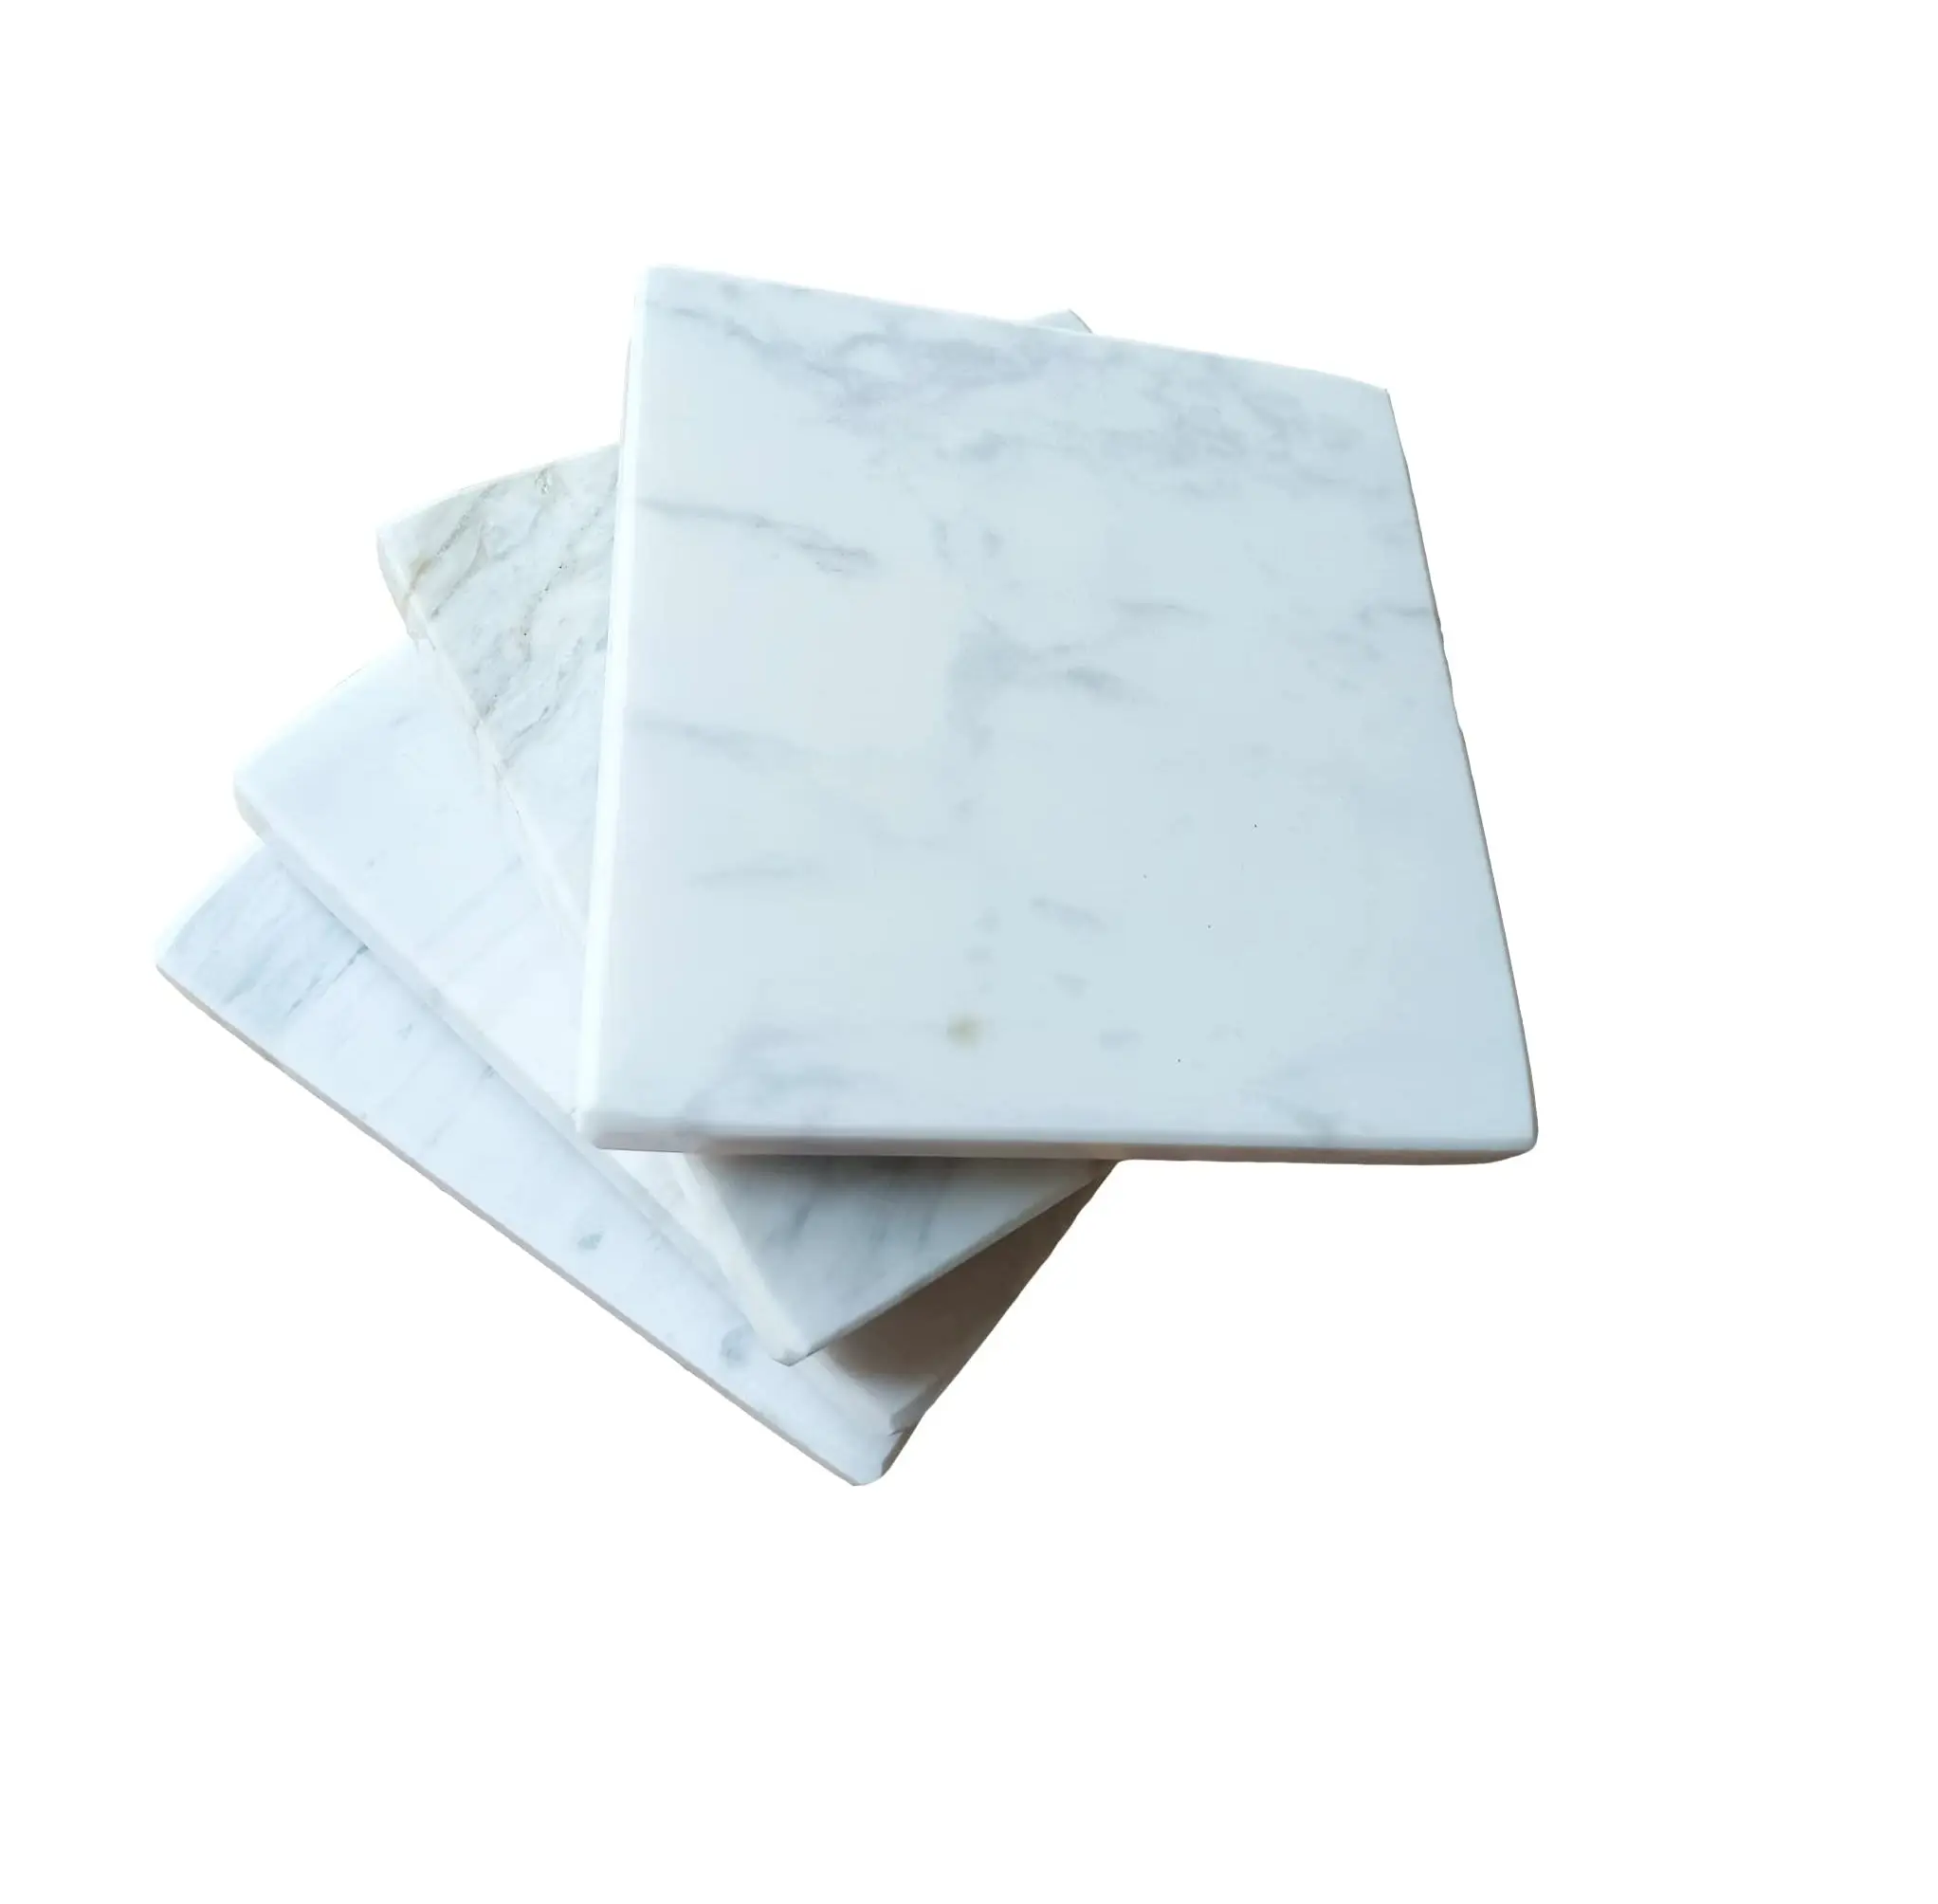 Sottobicchieri in marmo bianco con supporto in pelle Set di 4 sottobicchieri per bevande da 4 pollici (quadrati) fatti a mano da Adiba Home Decor